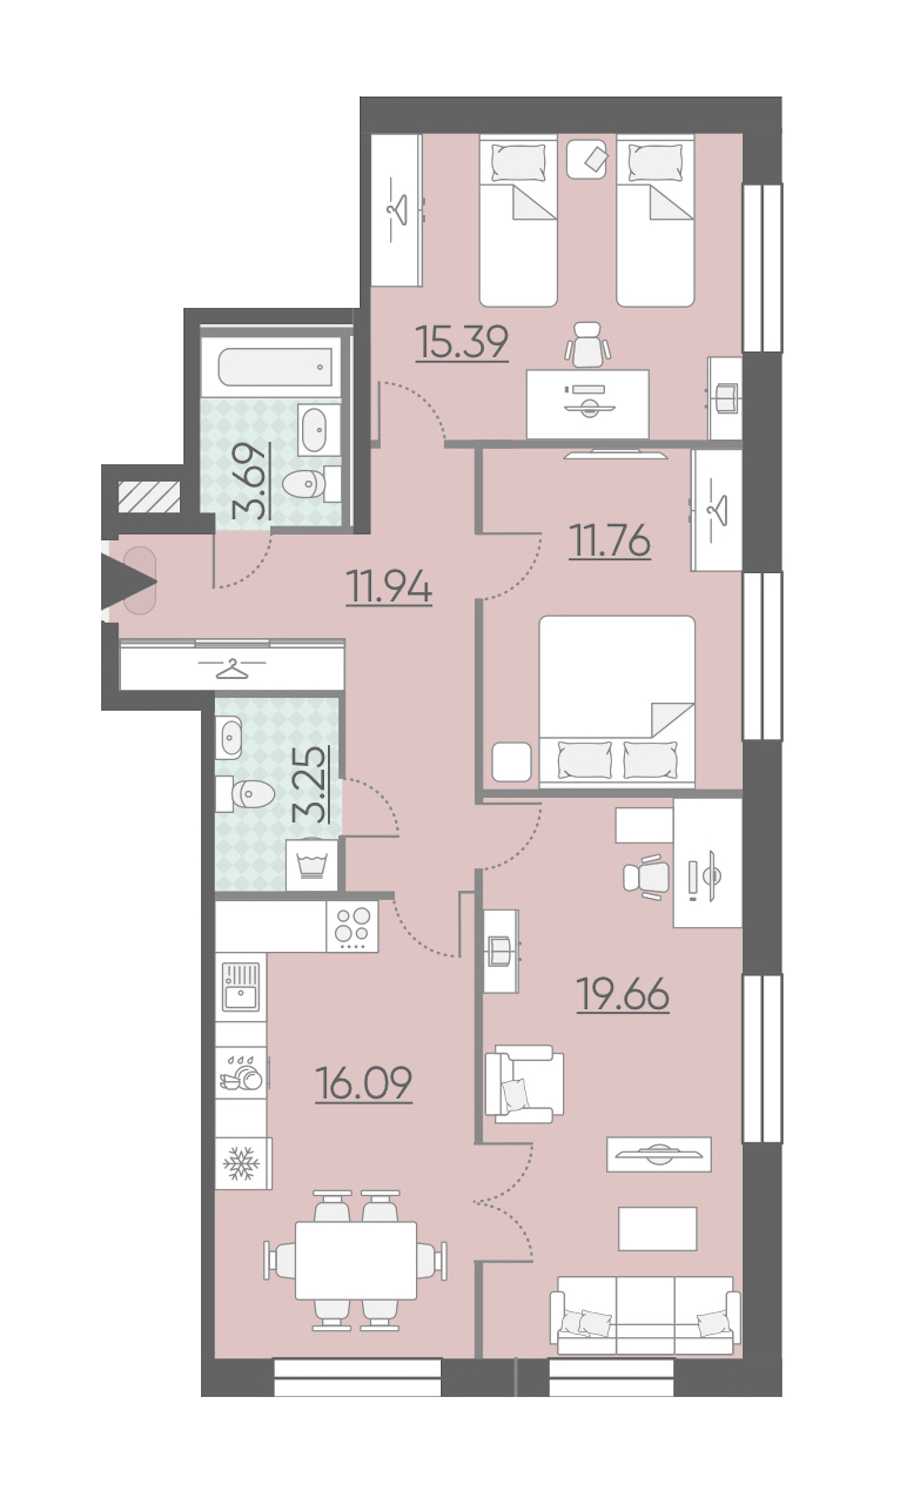 Трехкомнатная квартира в : площадь 81.78 м2 , этаж: 2 – купить в Санкт-Петербурге